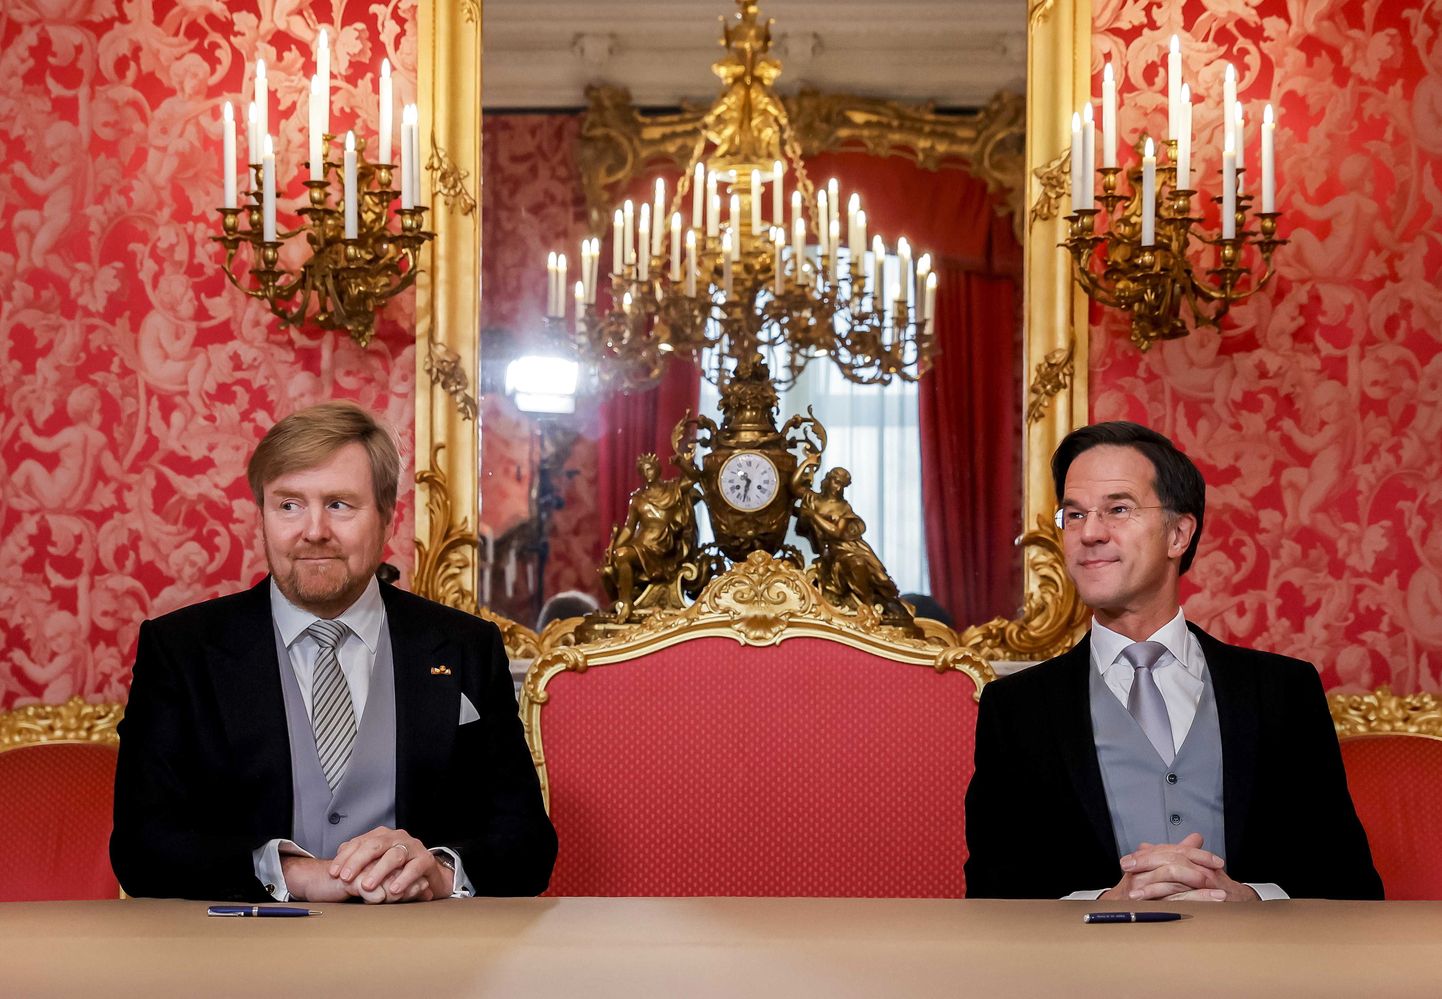 Hollandi kuningas Willem-Alexander (vasakul) ja peaminister Mark Rutte (paremal).